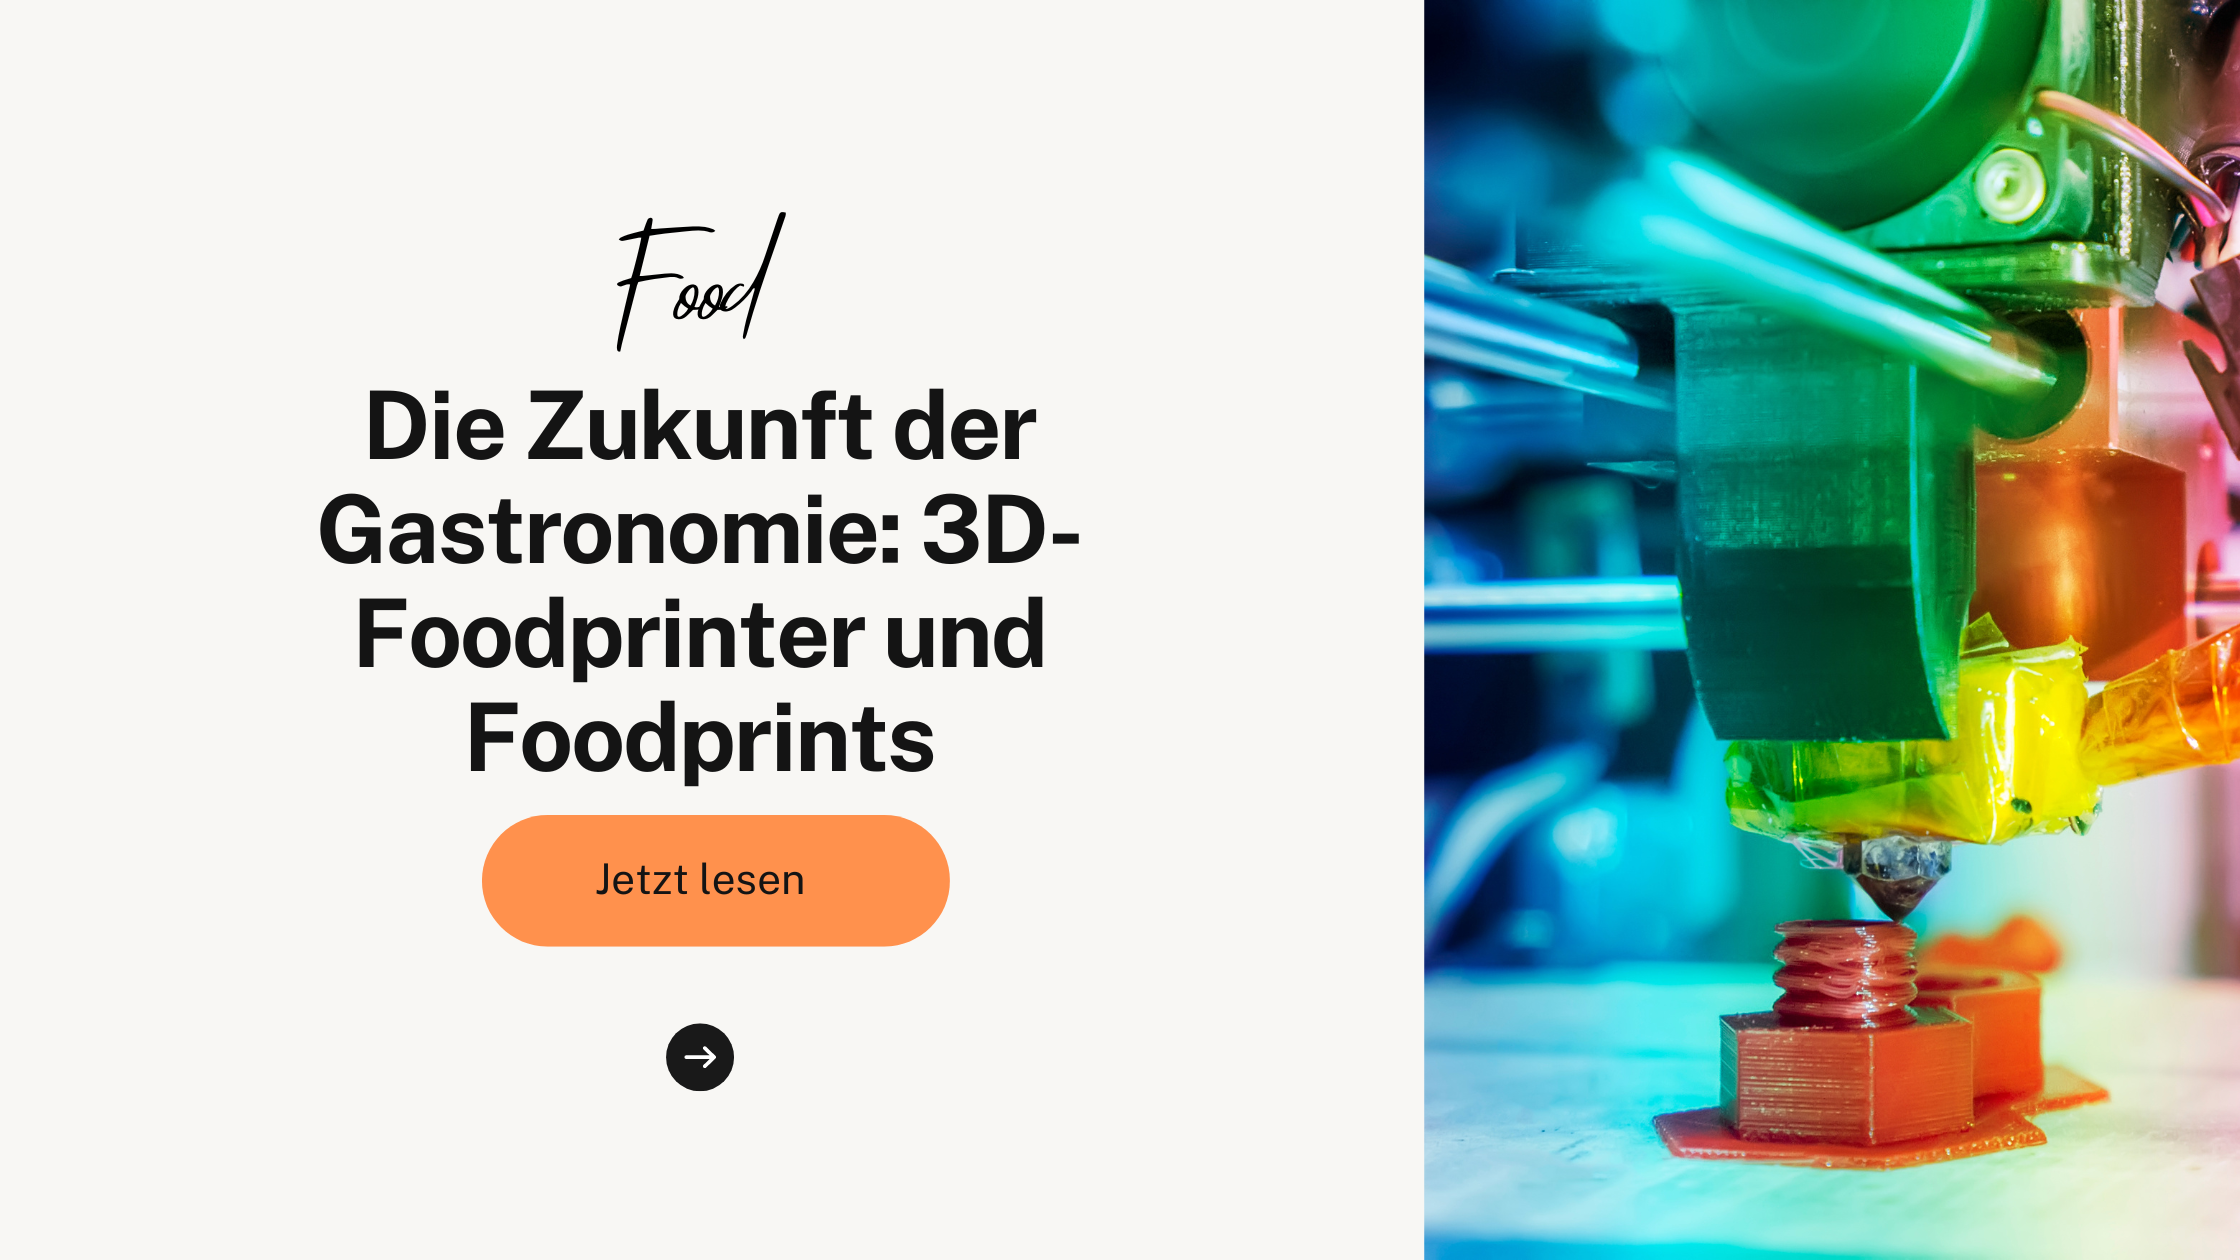 Die Zukunft der Gastronomie: 3D-Foodprinter und Foodprints